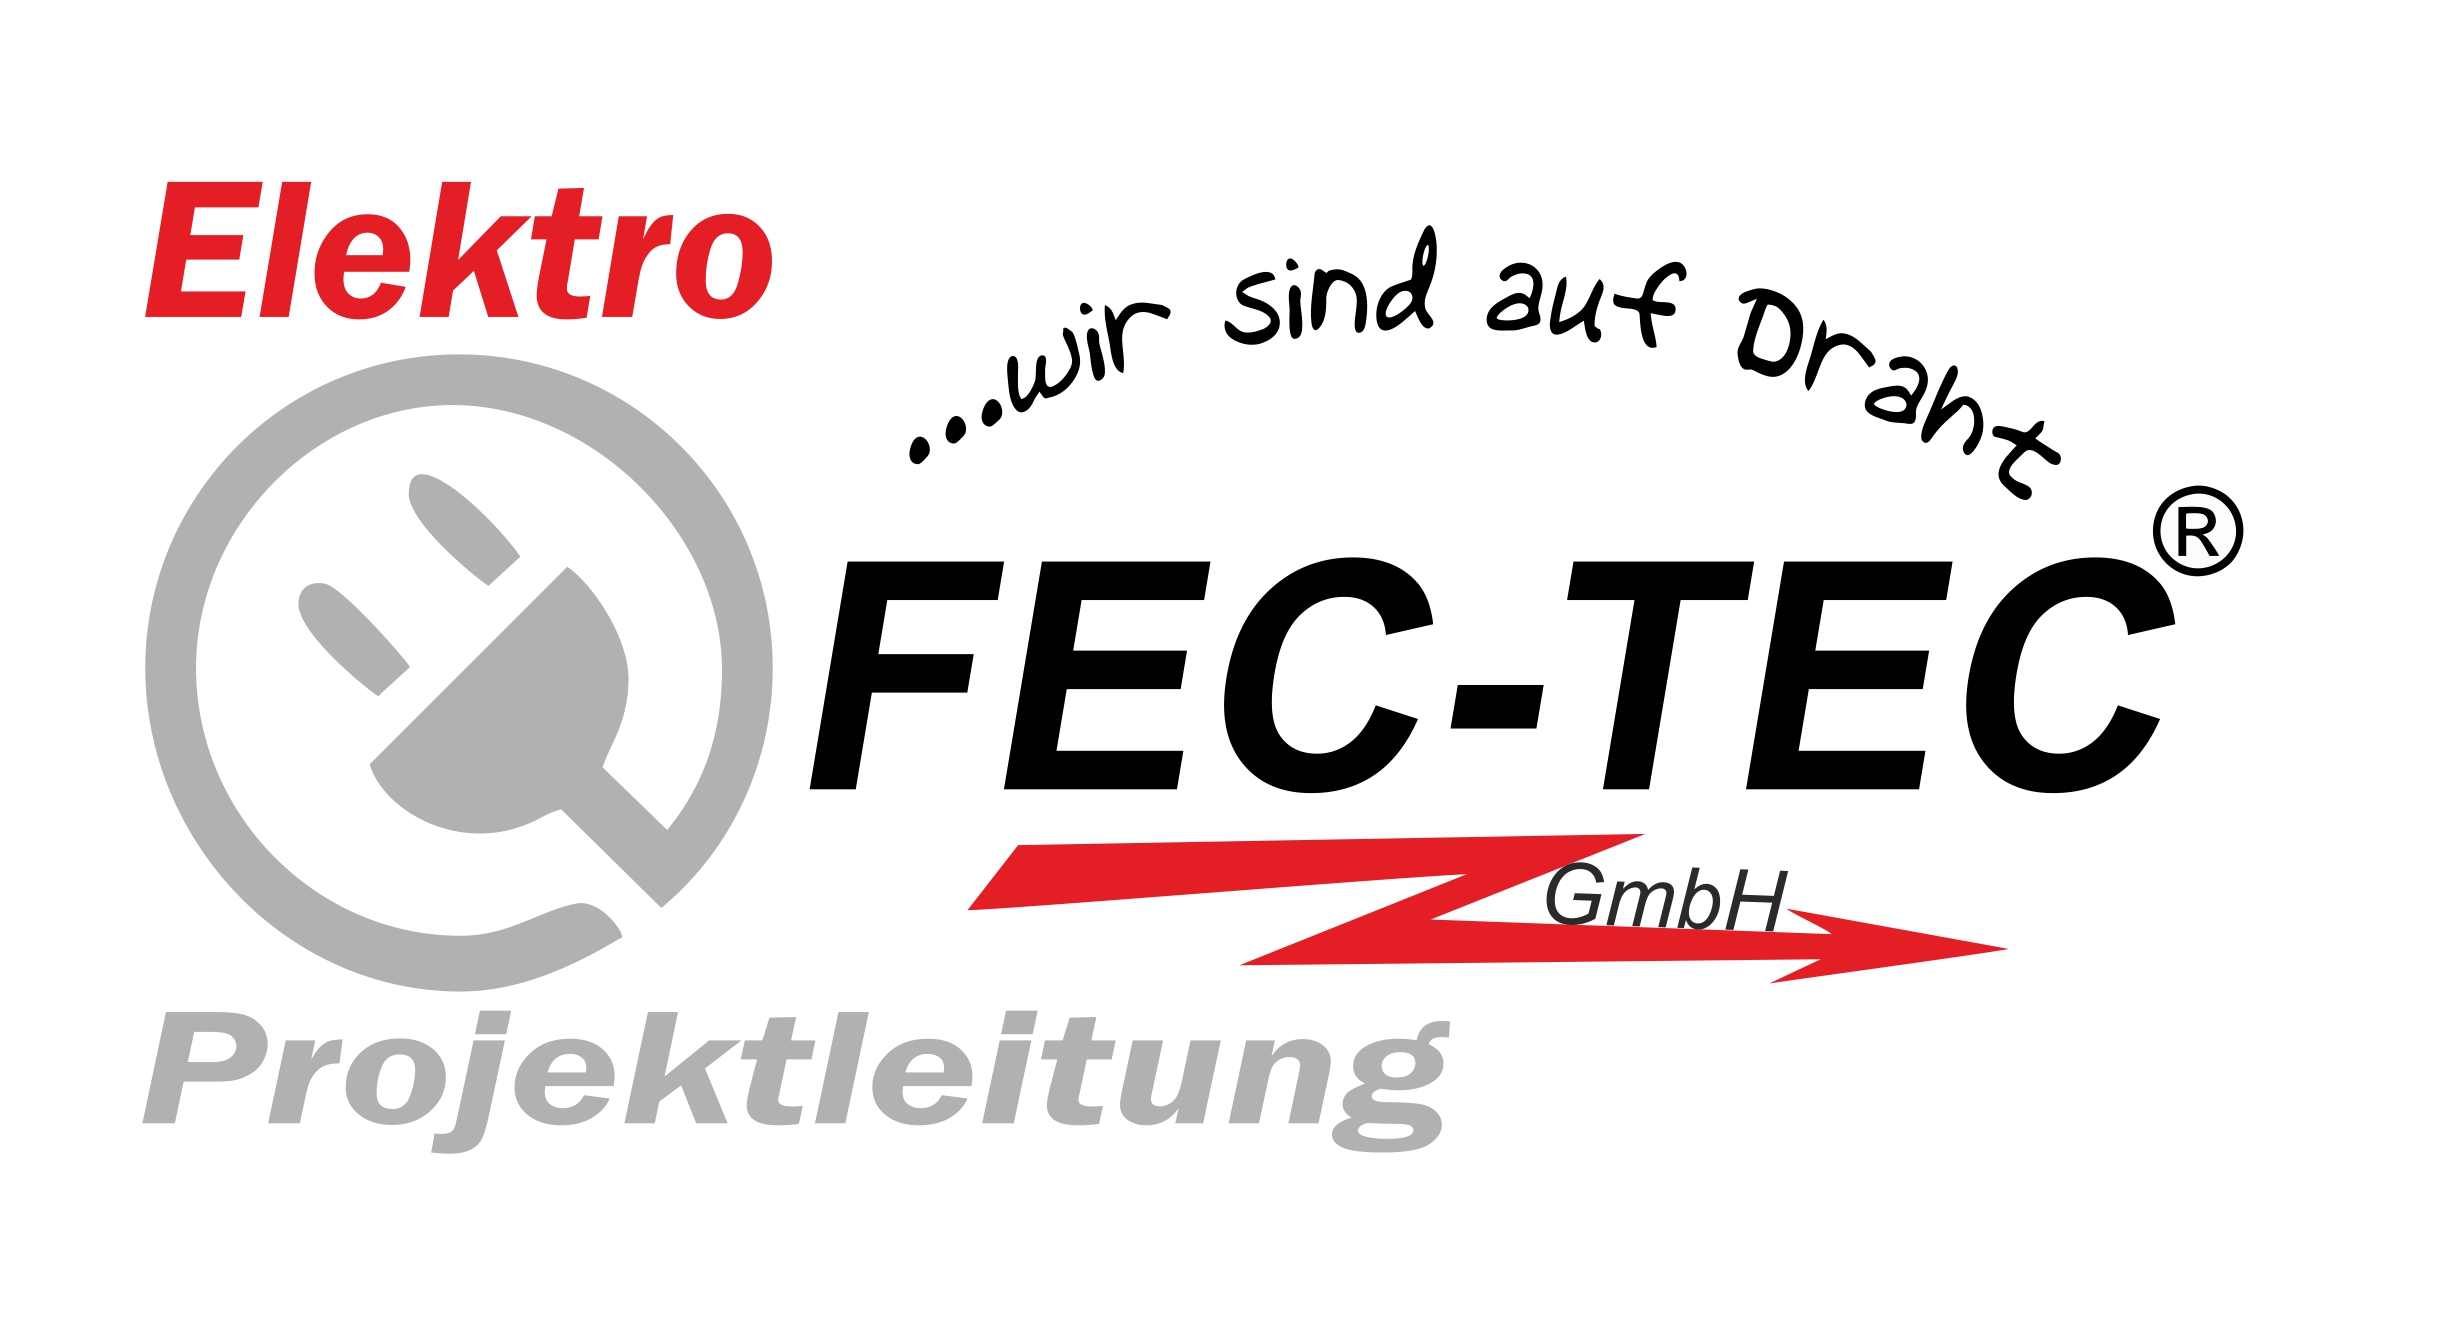 Elektro und Projektleitung FEC-TEC GmbH, der Elektrofachbetrieb und Projektleitungsspezialist aus Lambsheim. 